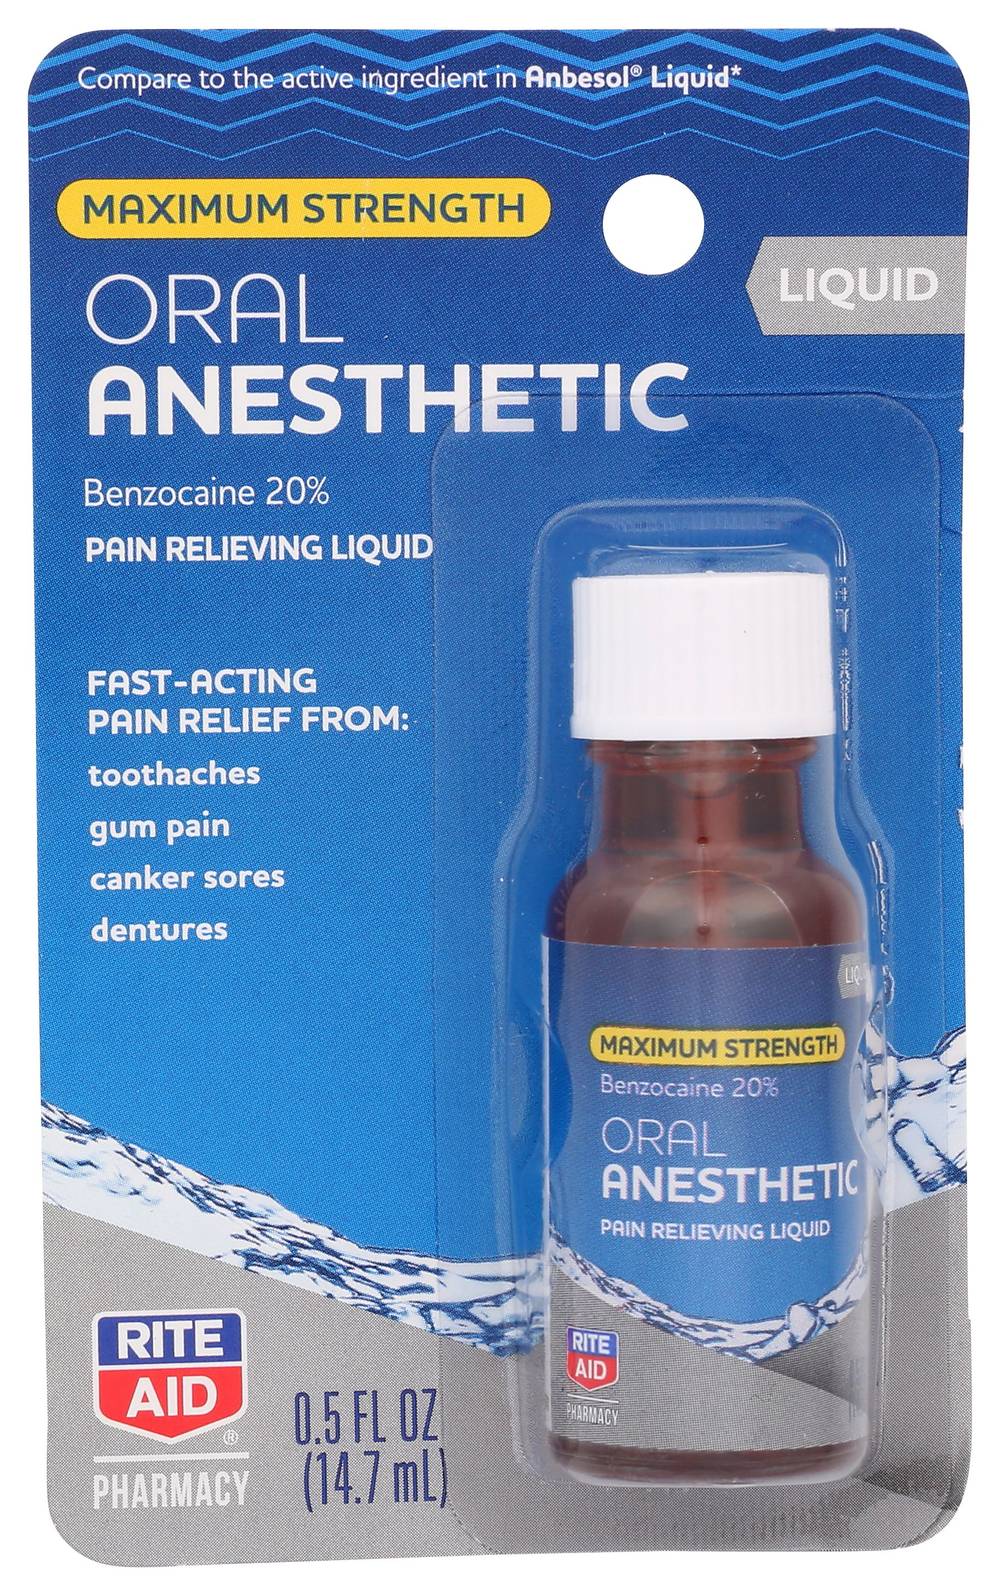 Rite Aid Maximum Strength Oral Anesthetic Pain Relieving Liquid